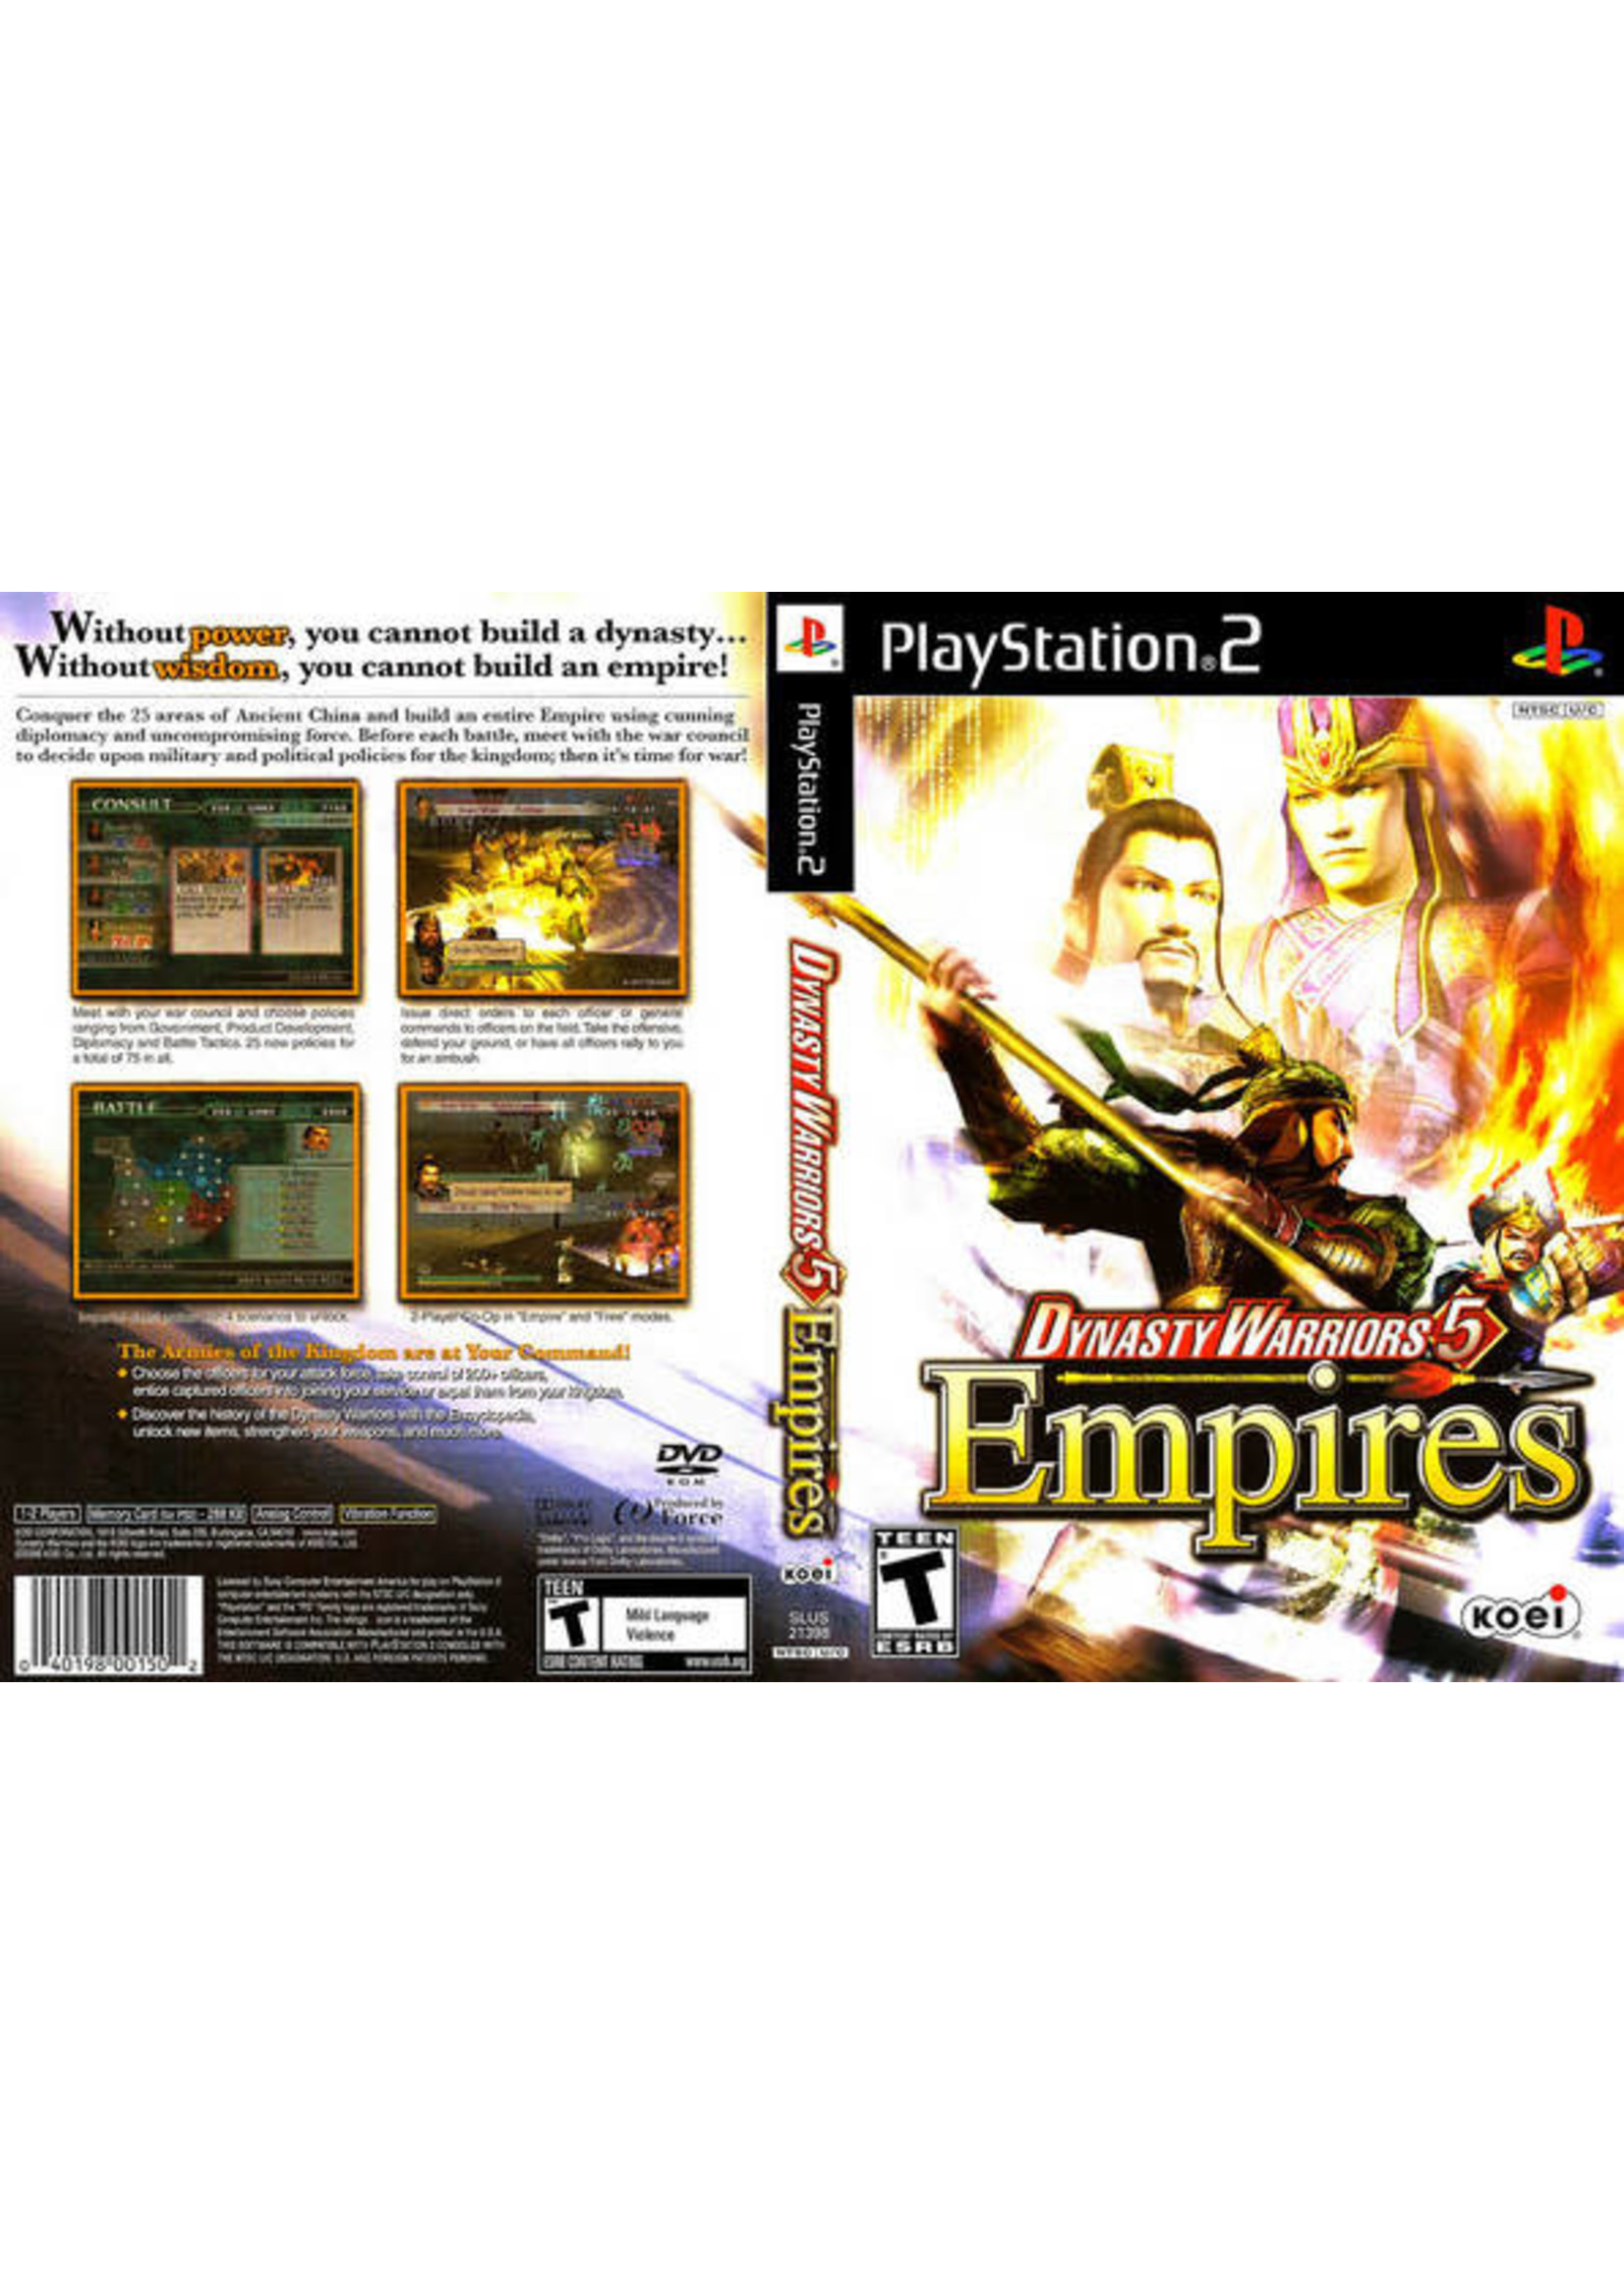 Sony Playstation 2 (PS2) Dynasty Warriors 5 Empires